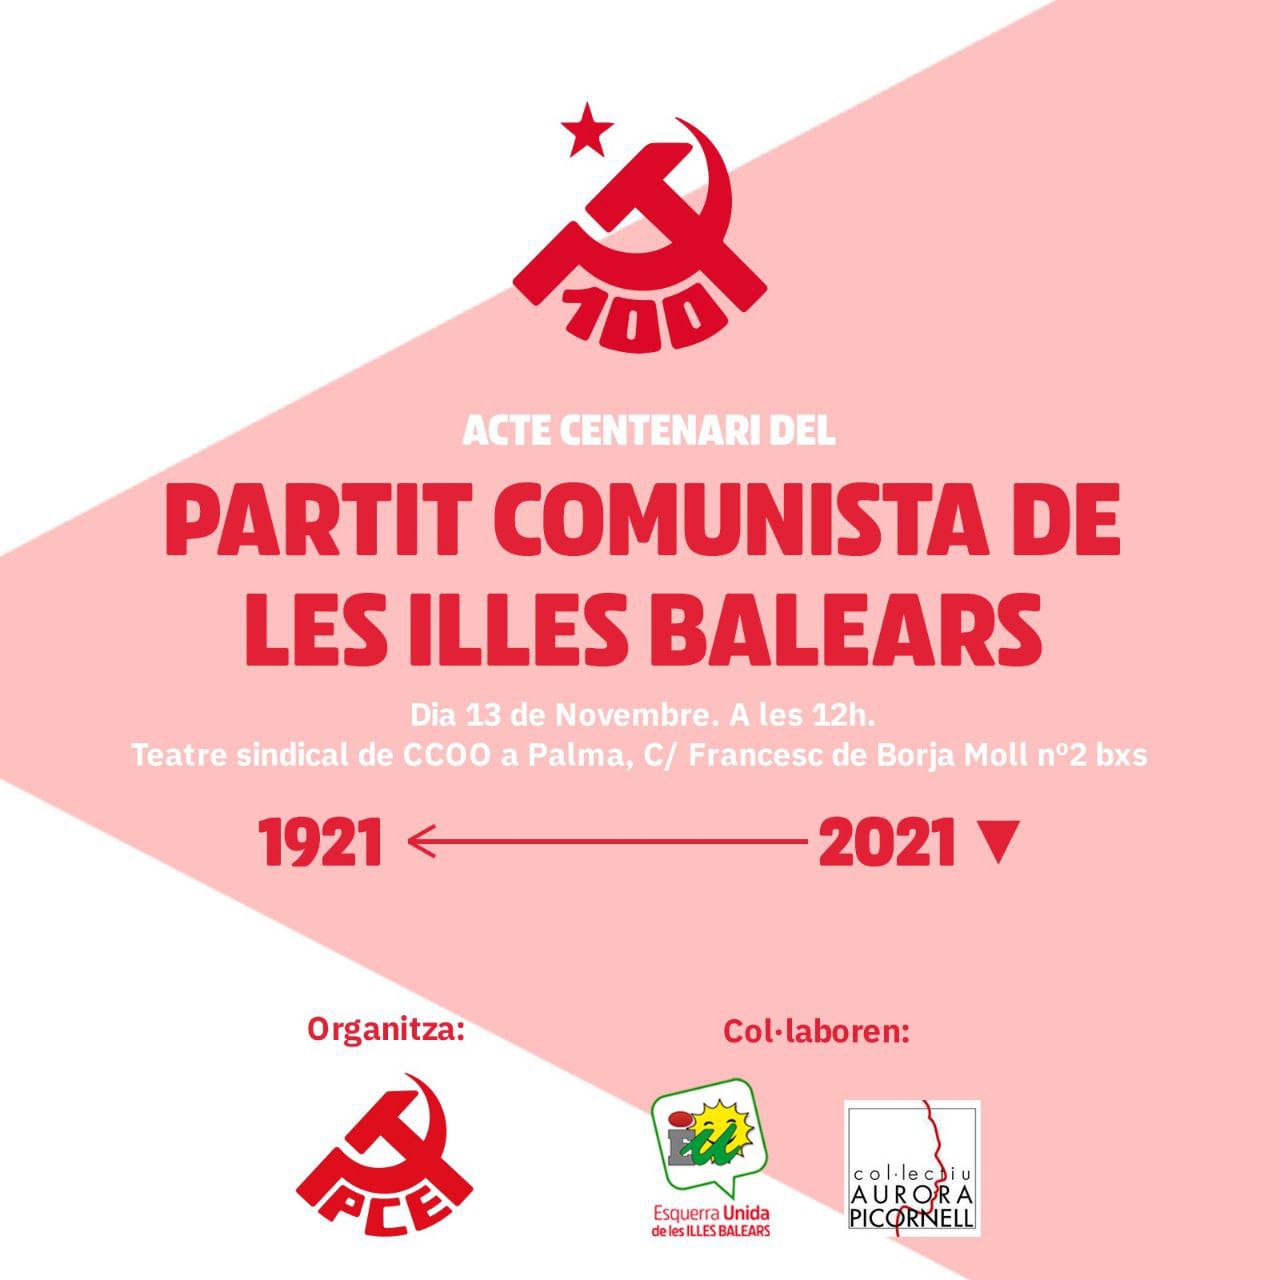 Acte centenari del Partit Comunista d’Espanya